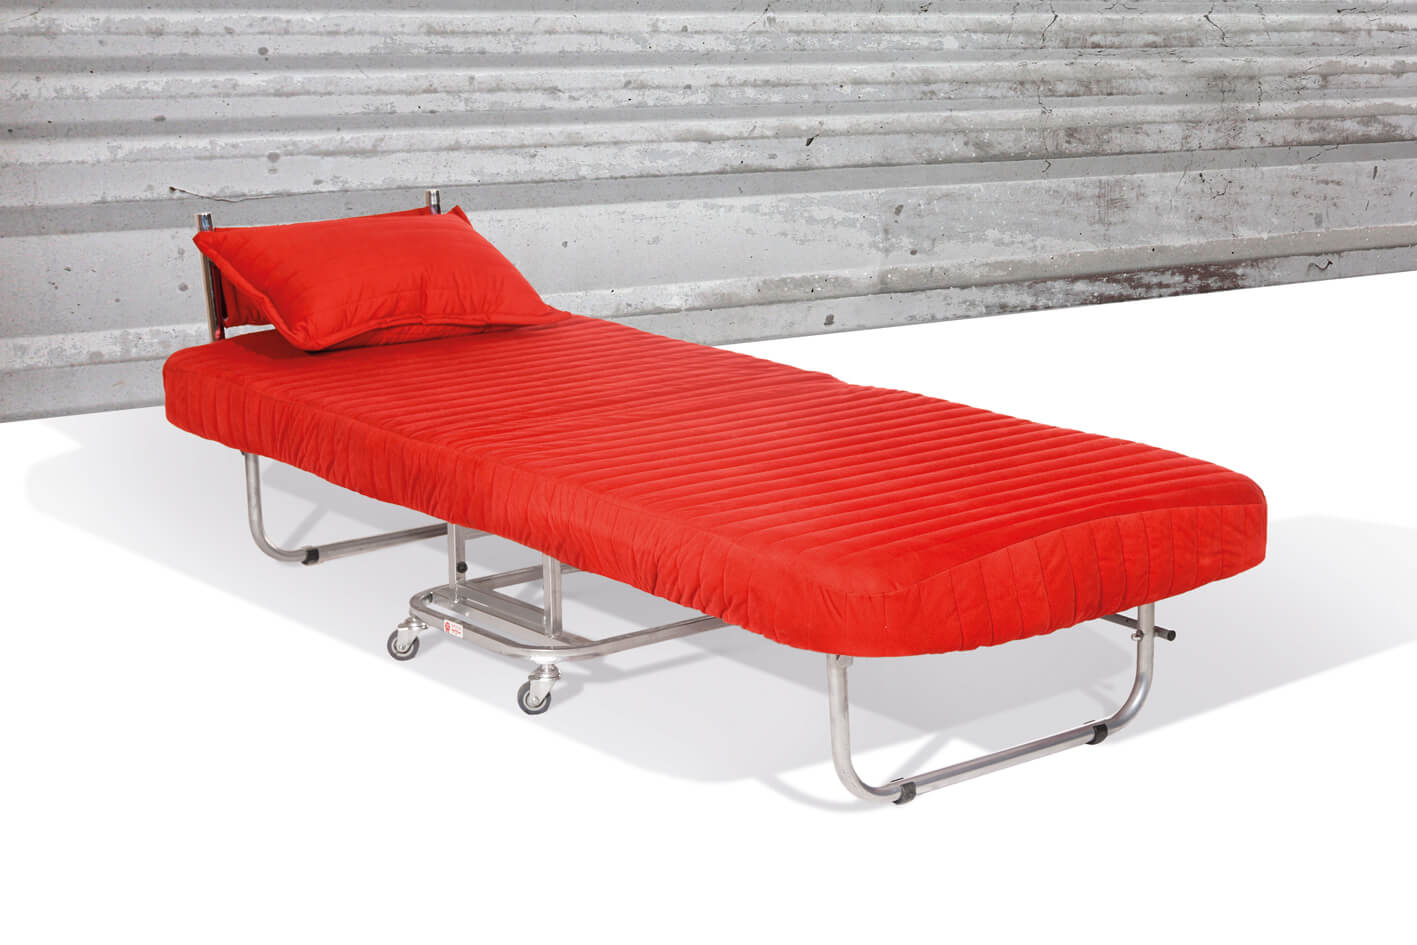 مبل تخت شو تک نفره قرمز که مخصوص بیمارستان میباشد و به تخت تبدیل شده است